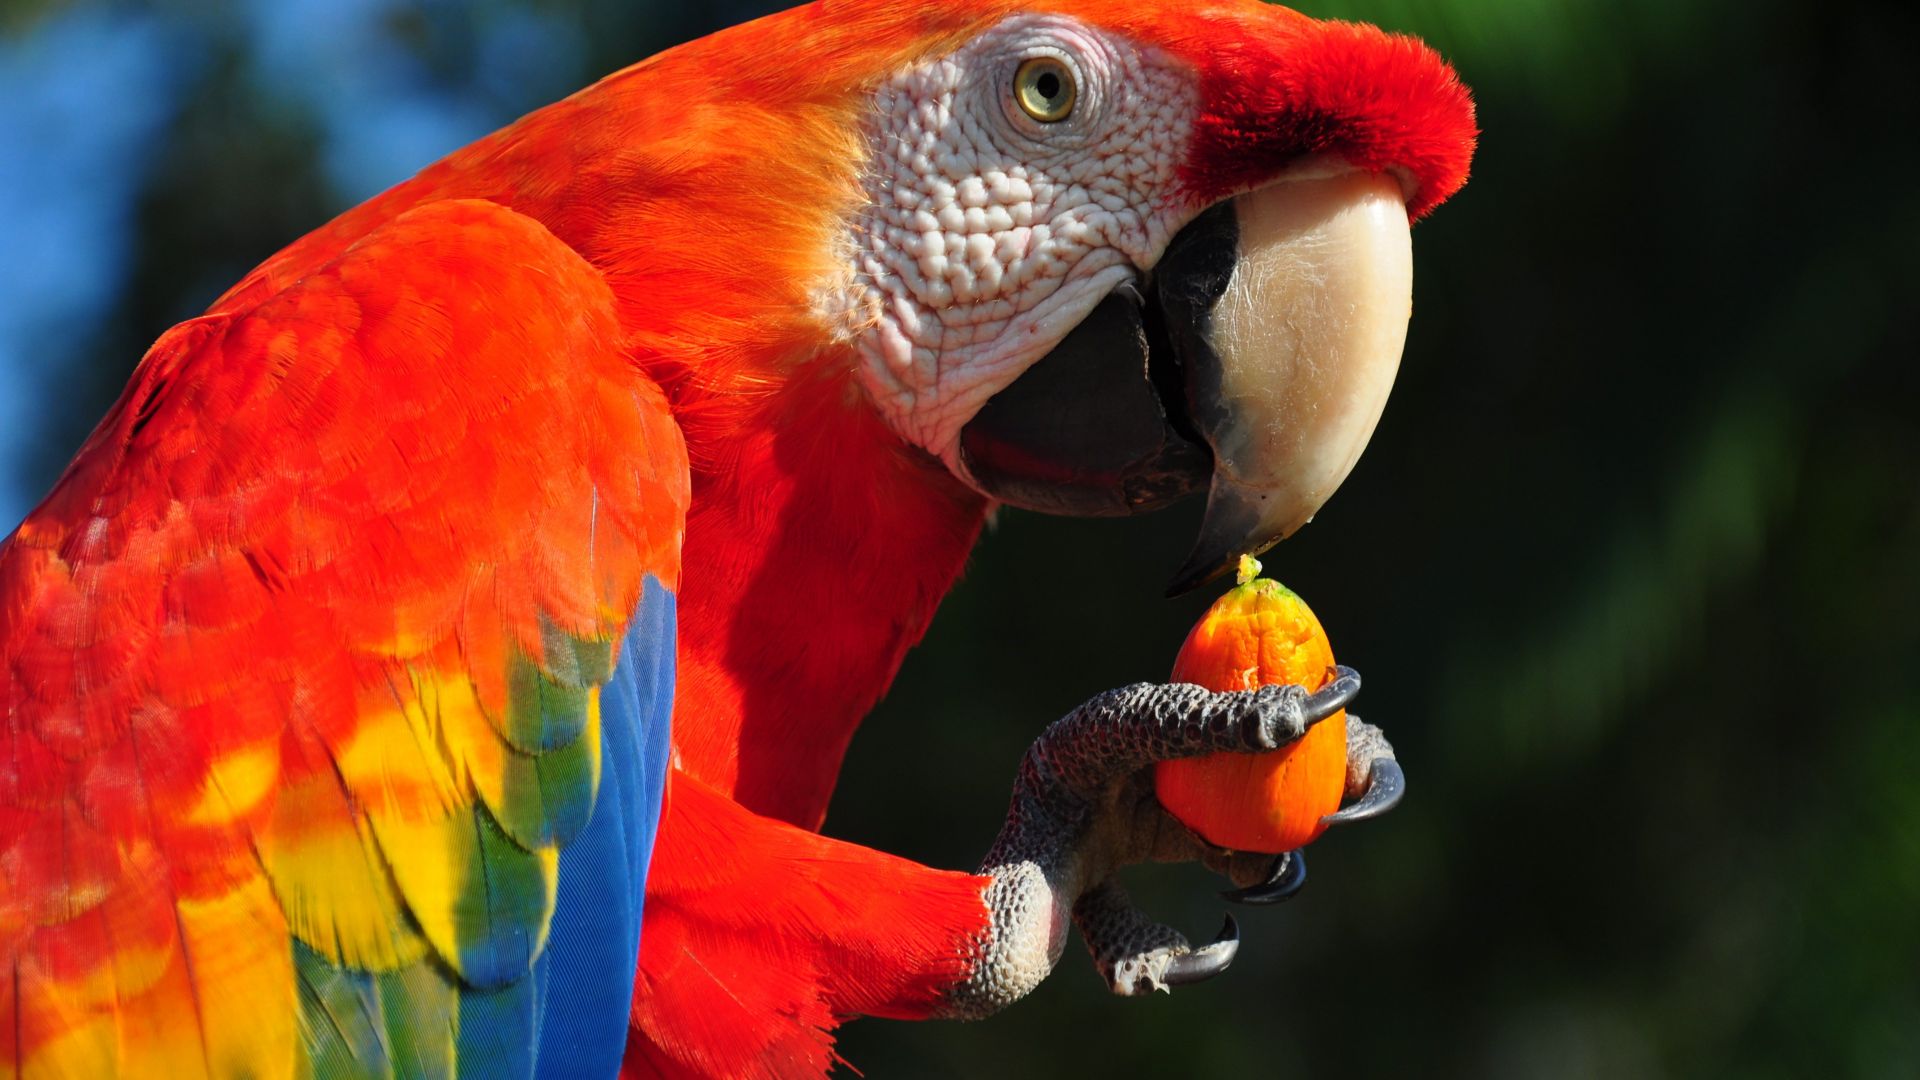 Macaw parrot, tropical bird (horizontal)